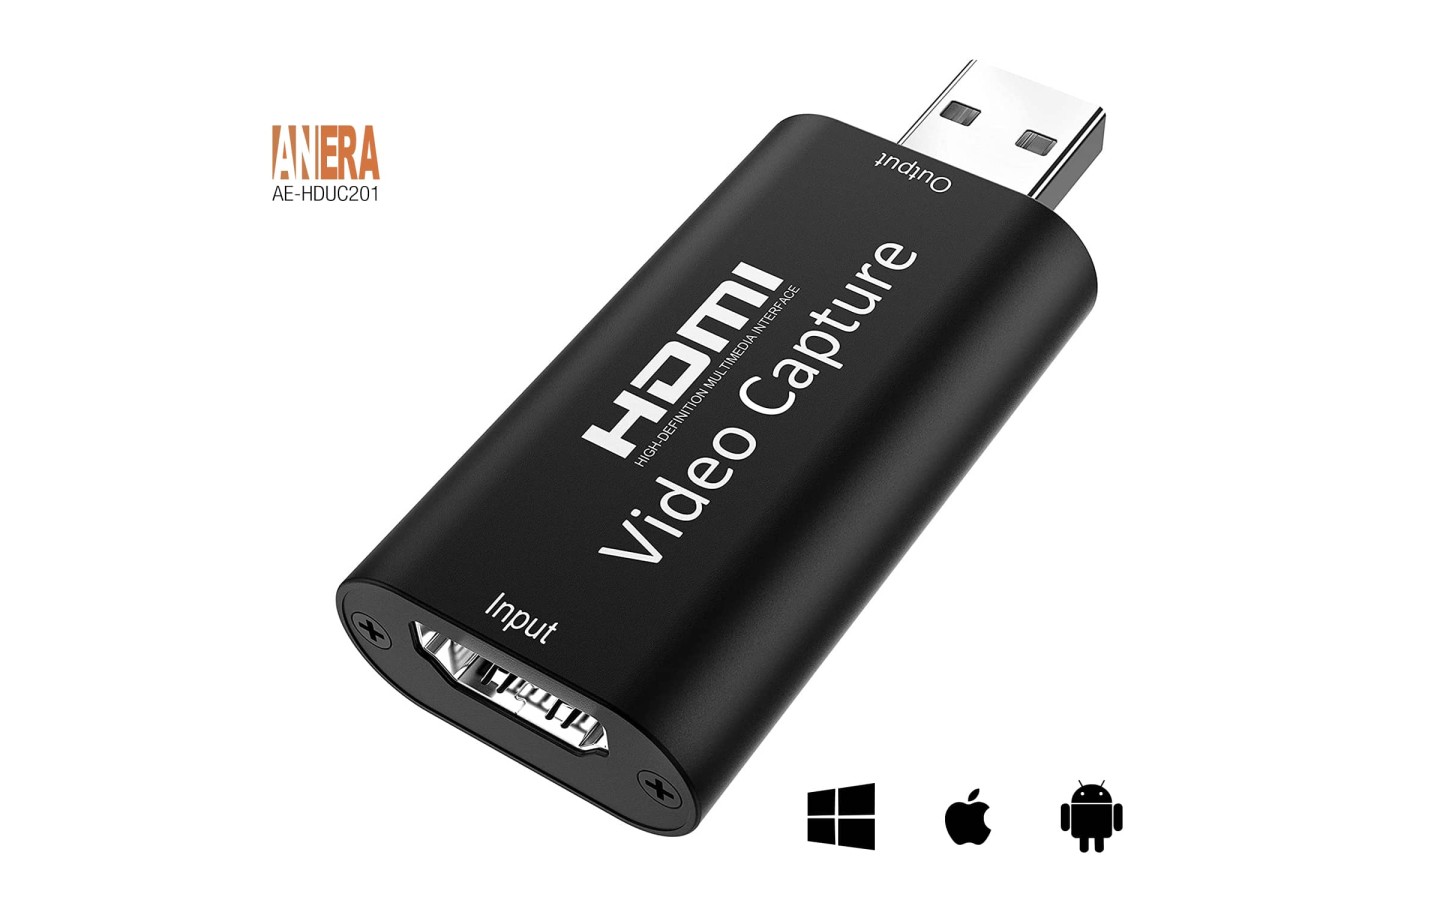 Capturadora de video HDMI de hasta 4K de entrada y 1080p de salida USB